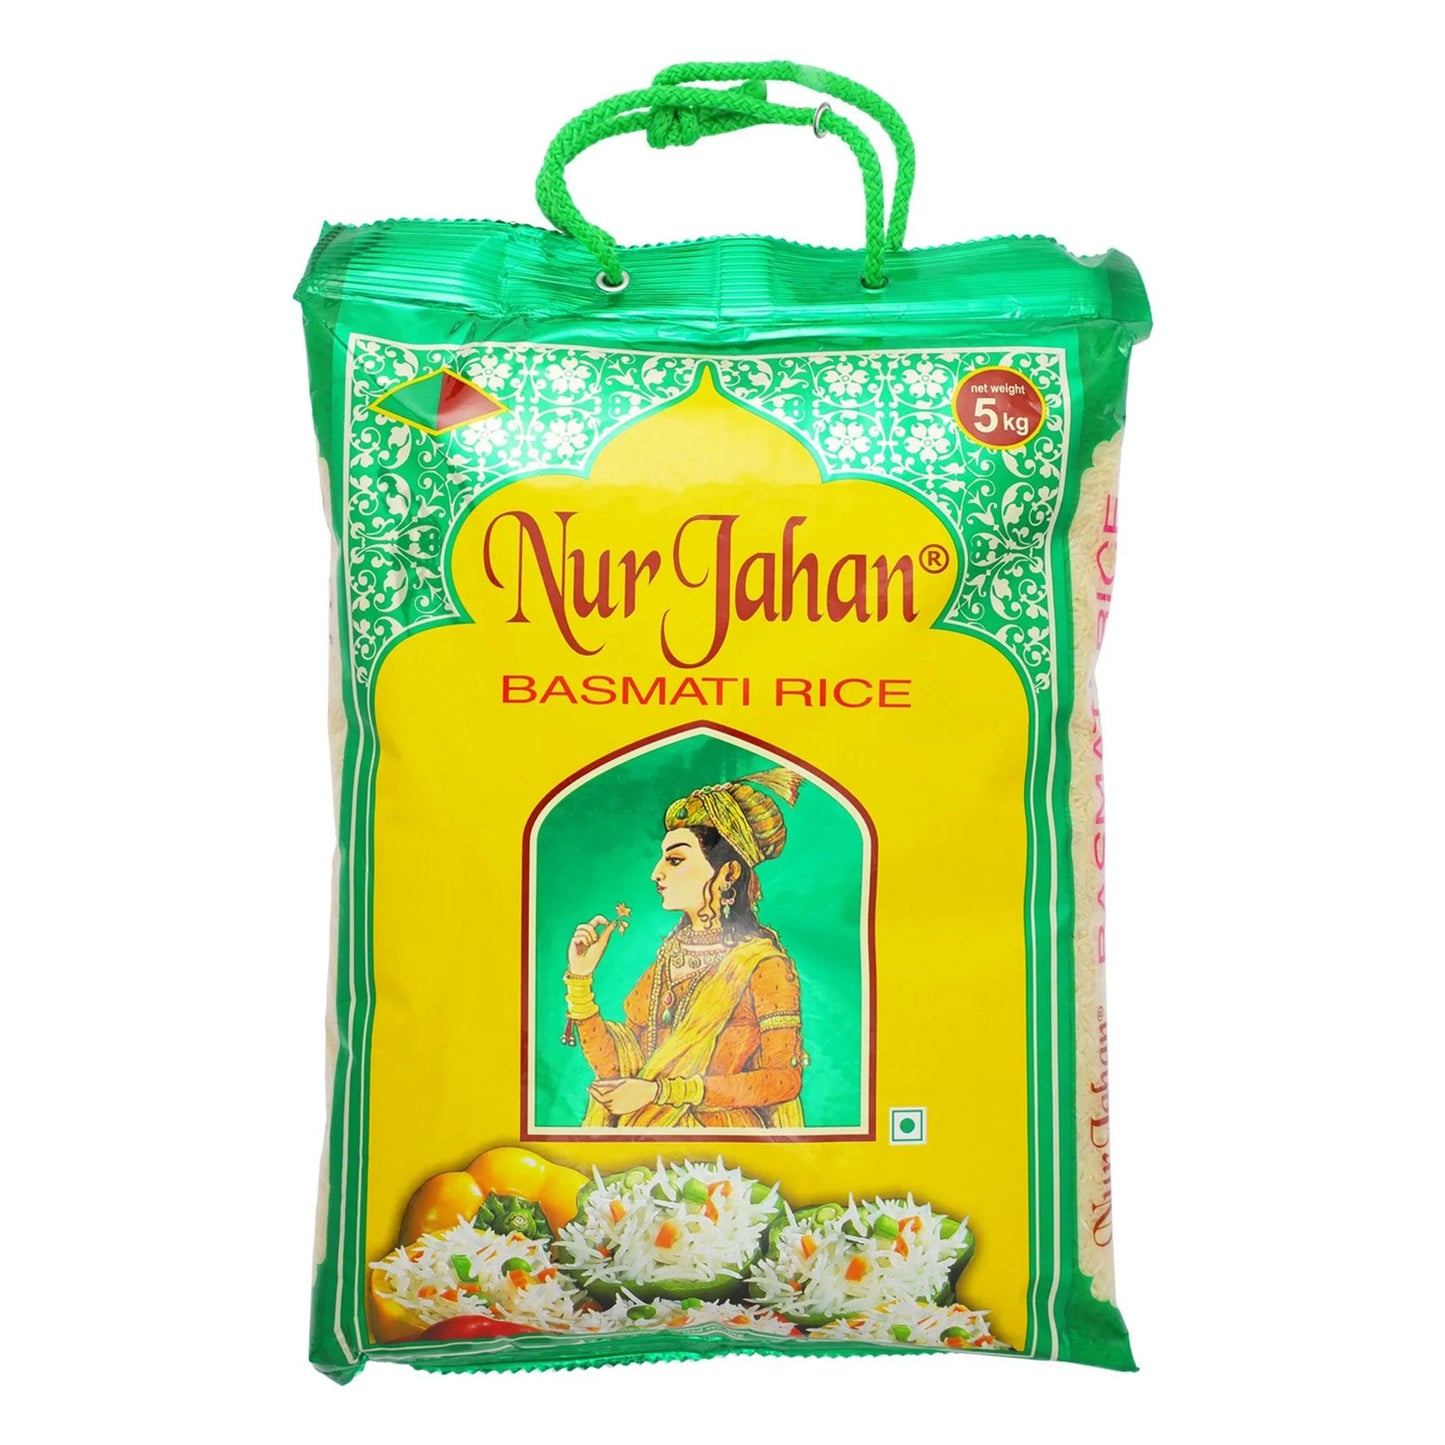 Nur Jahan Basmati Rice - 5kg